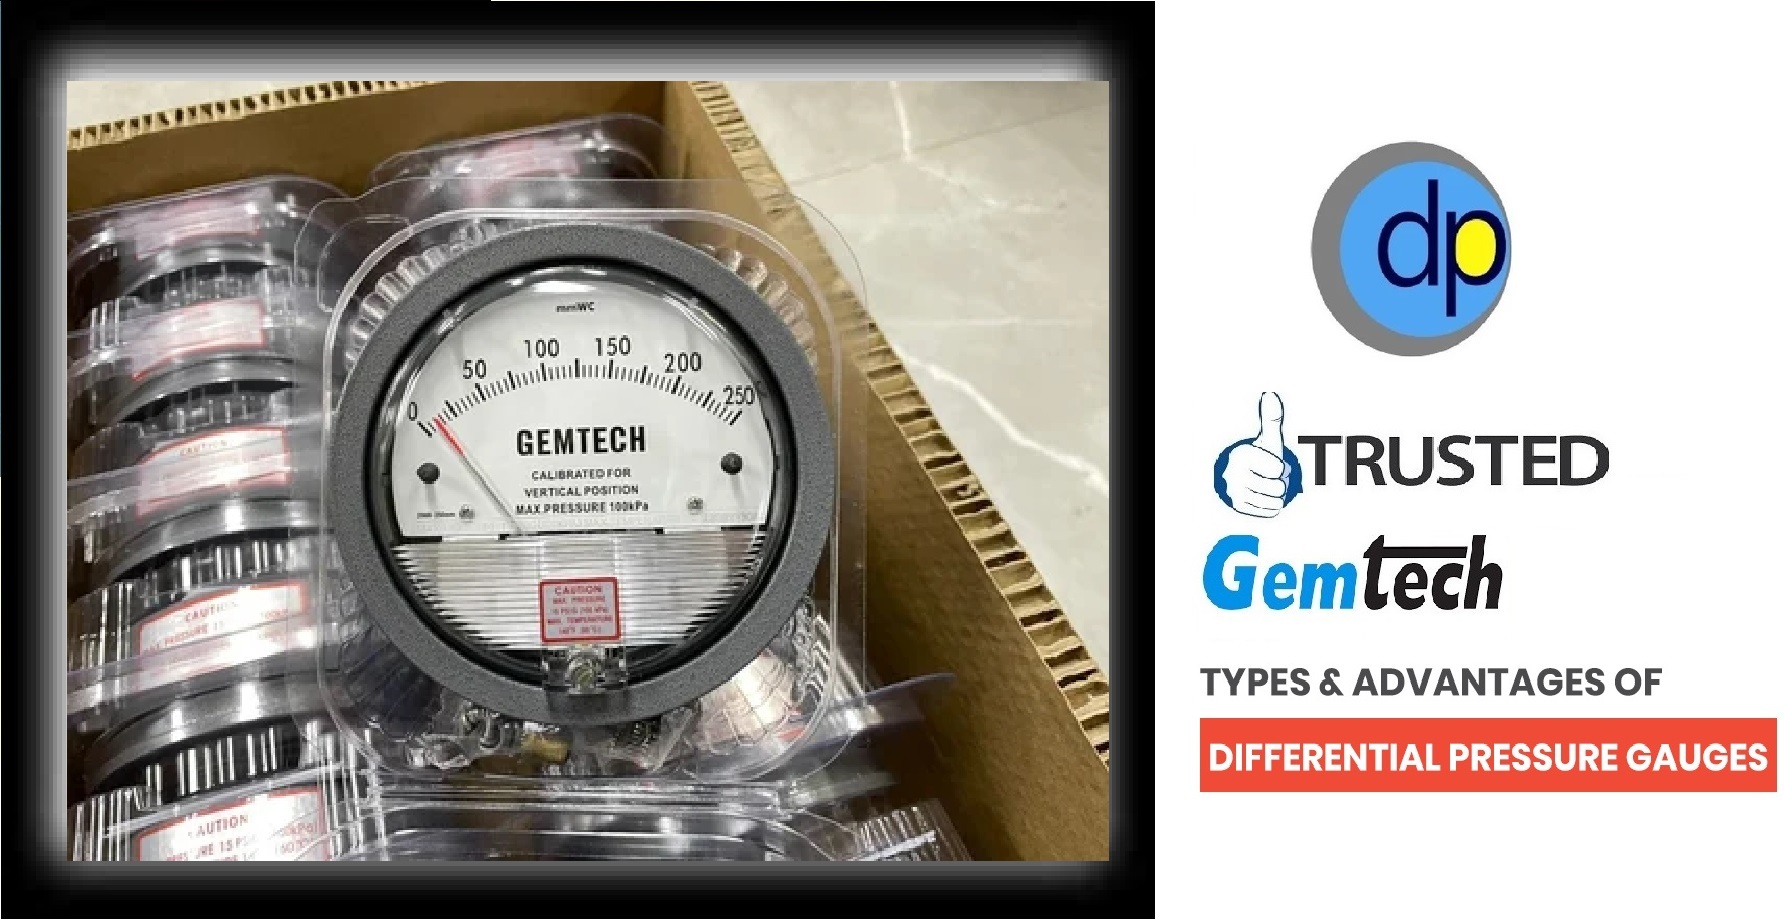 Series N2000 GEMTECH Differential Pressure Gauges by Sonipat Haryana